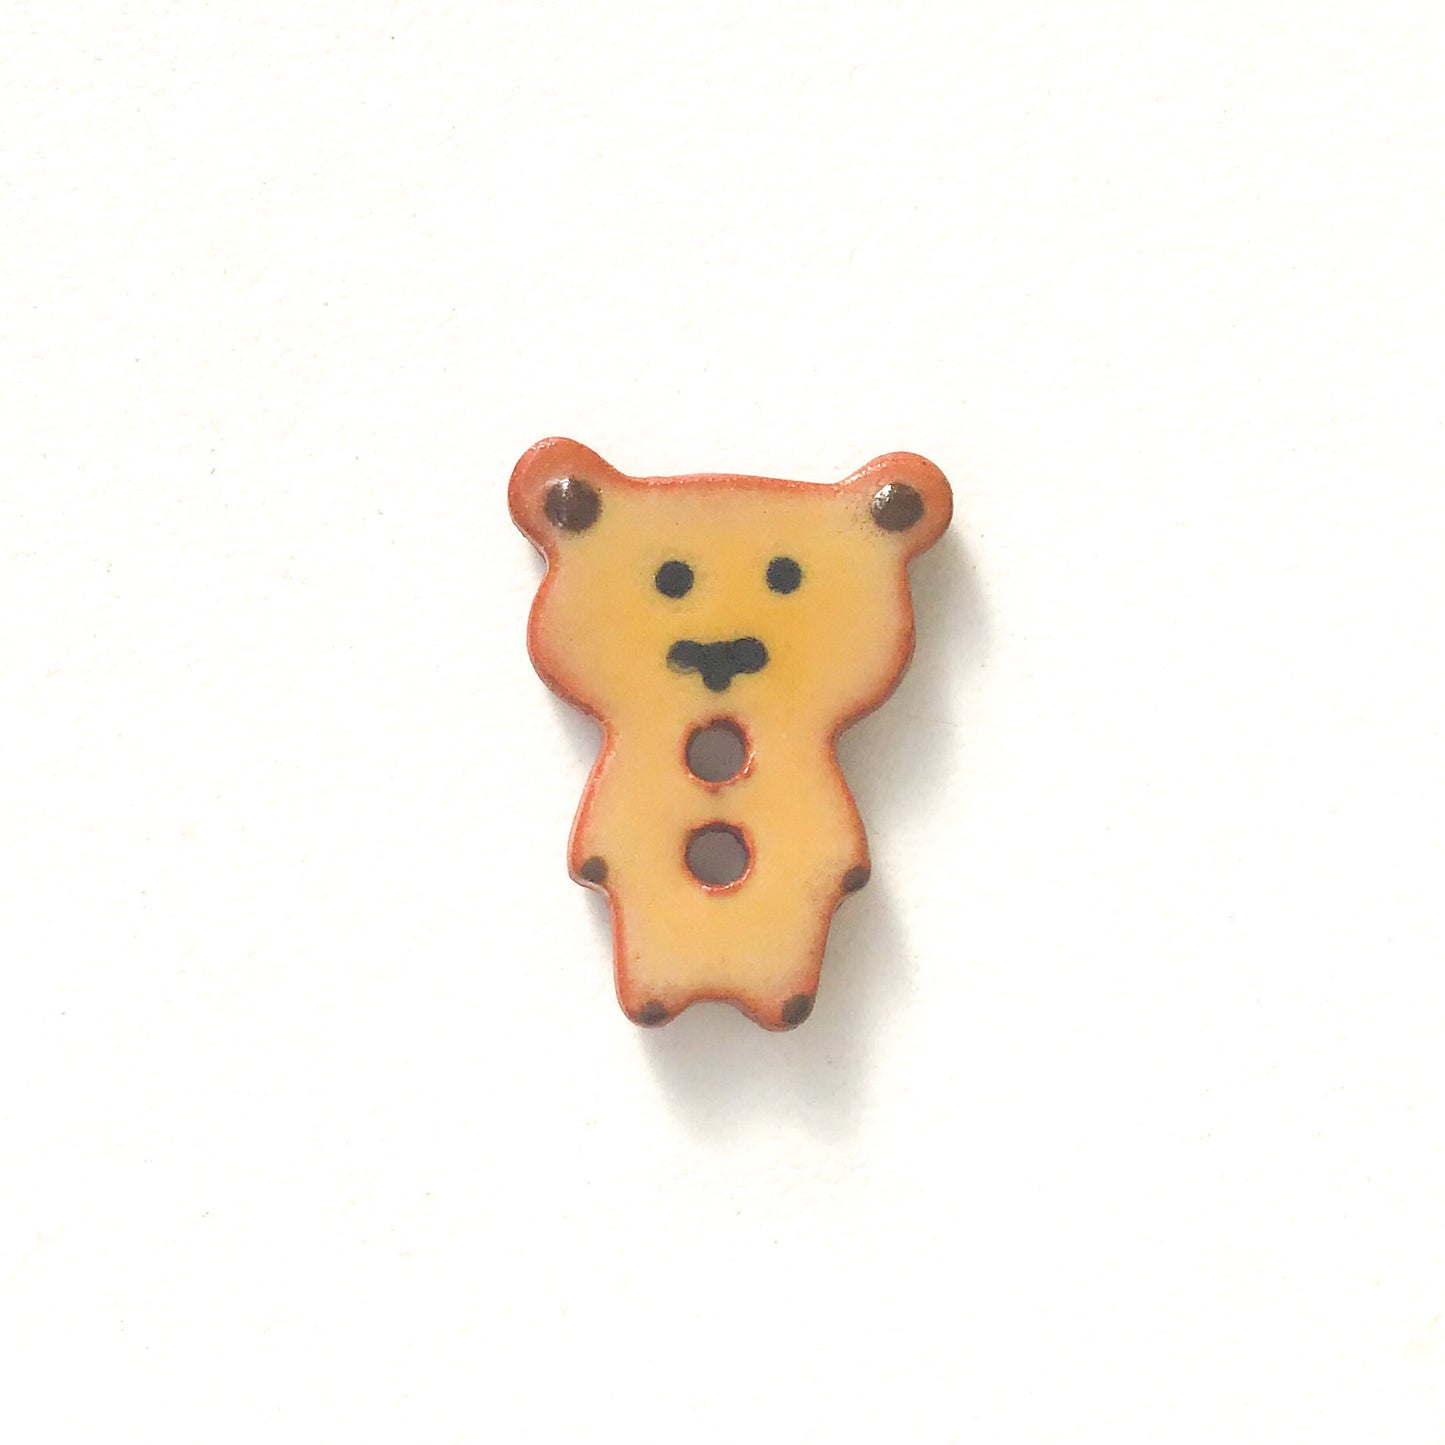 Teddy Bear Buttons - Ceramic Bear Buttons -Children's Animal Buttons (ws-243)